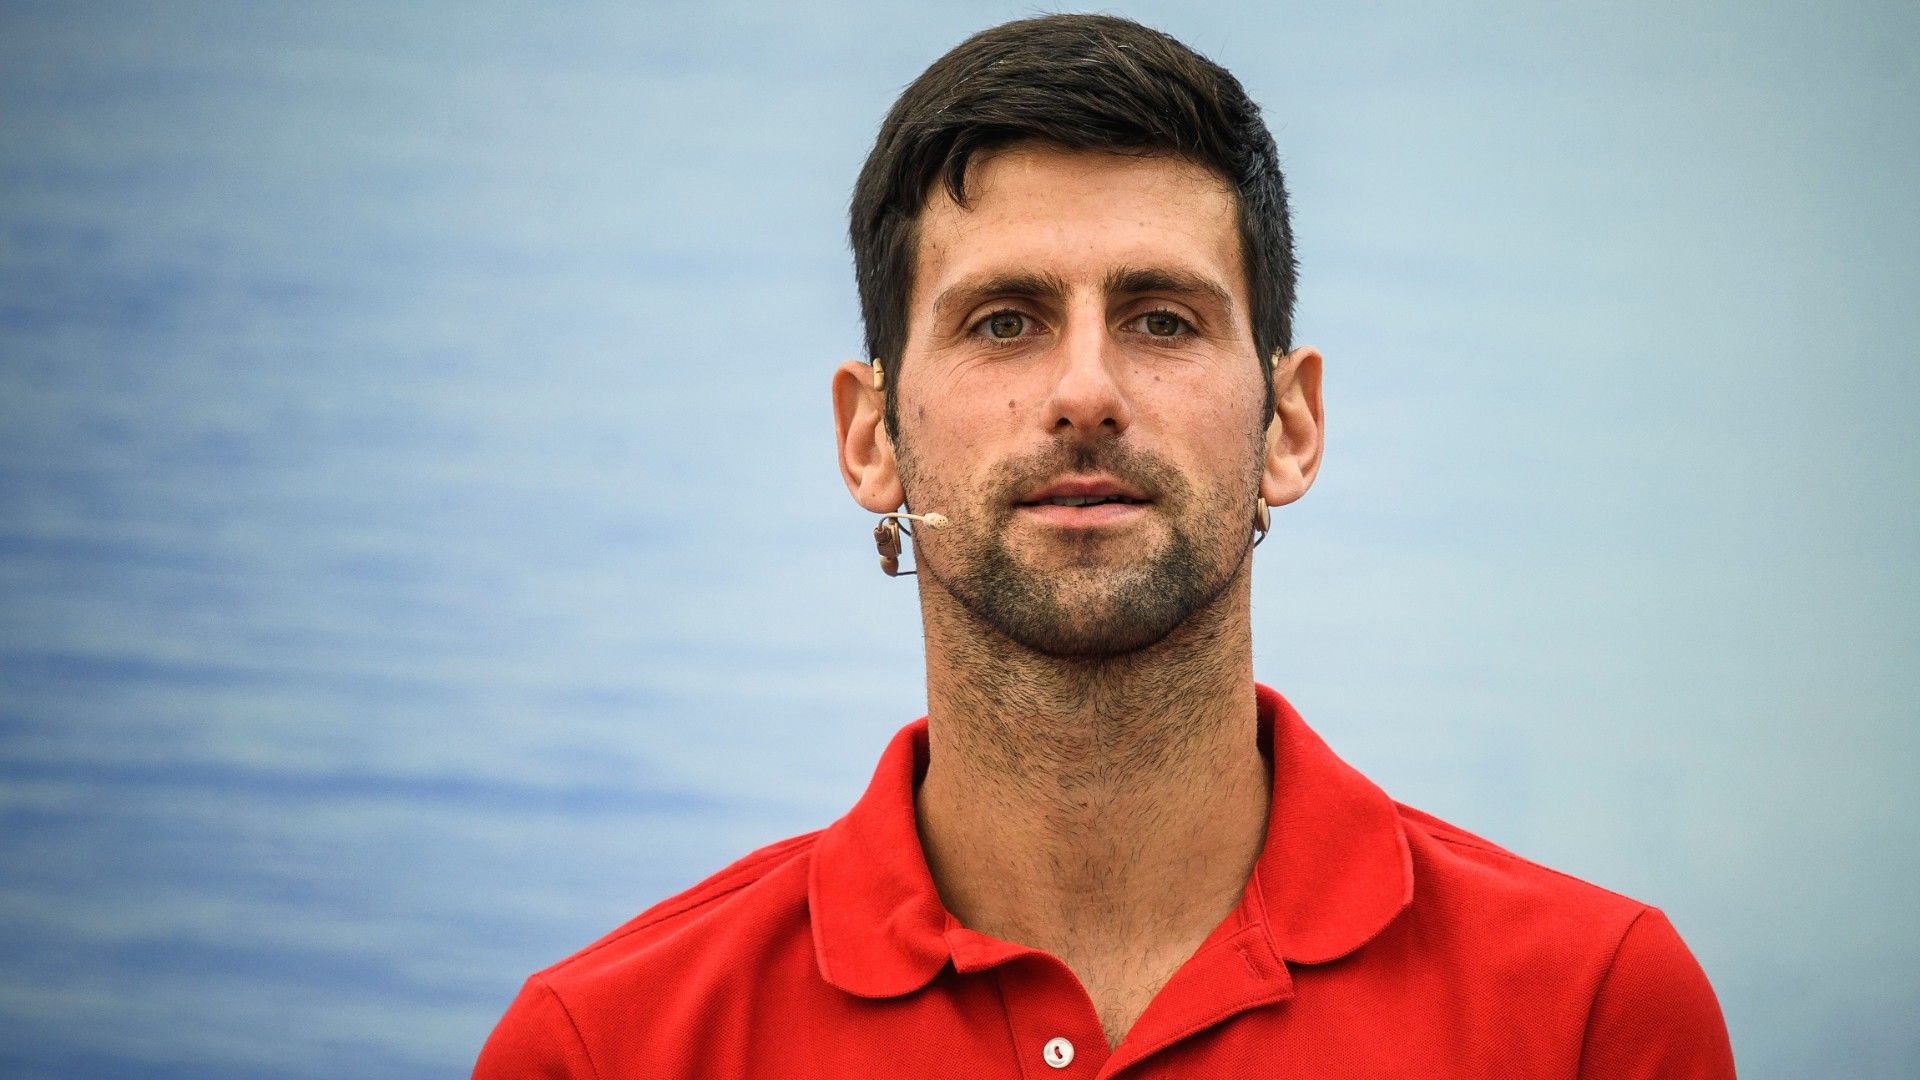 Két hónap karantén után mehetett haza Novak Djokovic